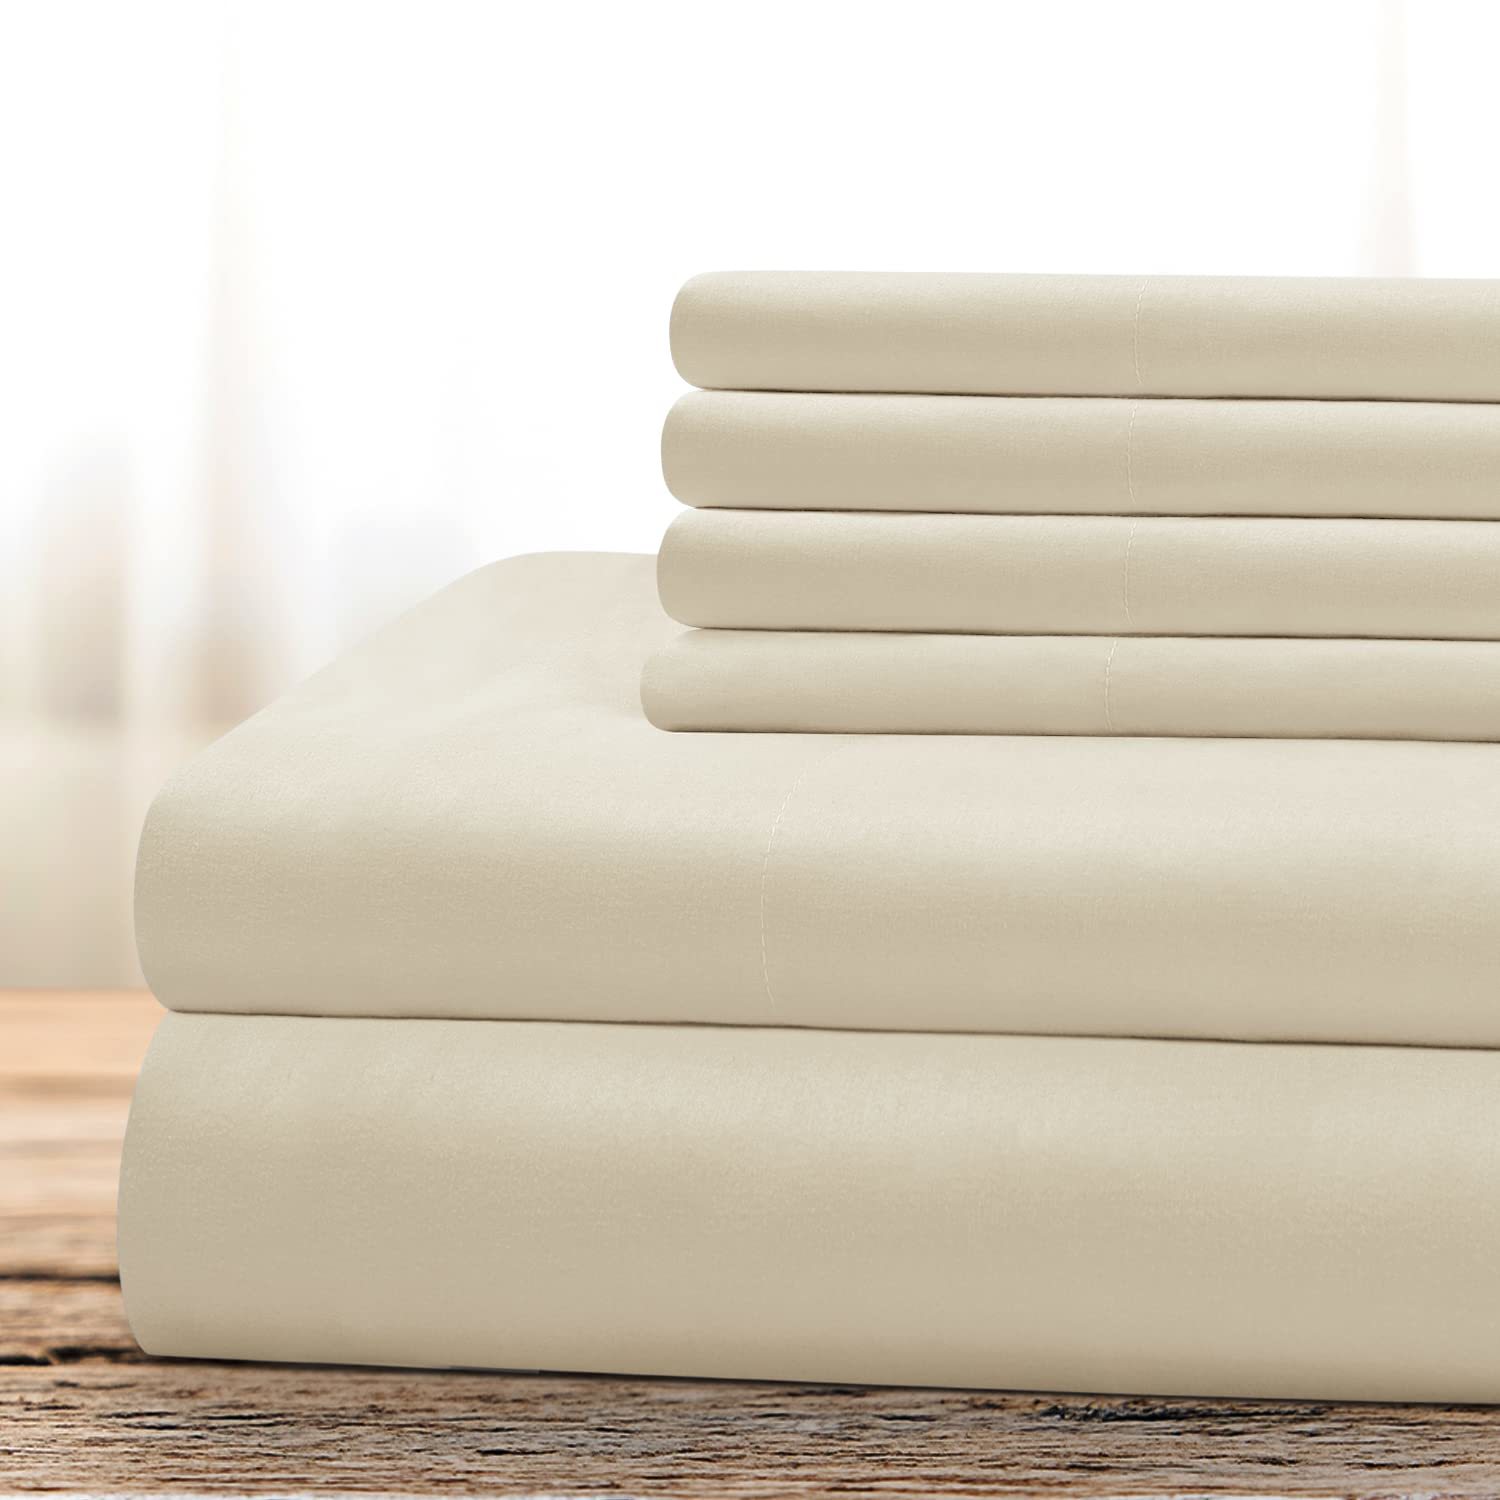 Hotel Luxury Bed Sheets Set 6 Piece(King, Cream/Beige) - Super Soft 1800 Thread  - $62.99